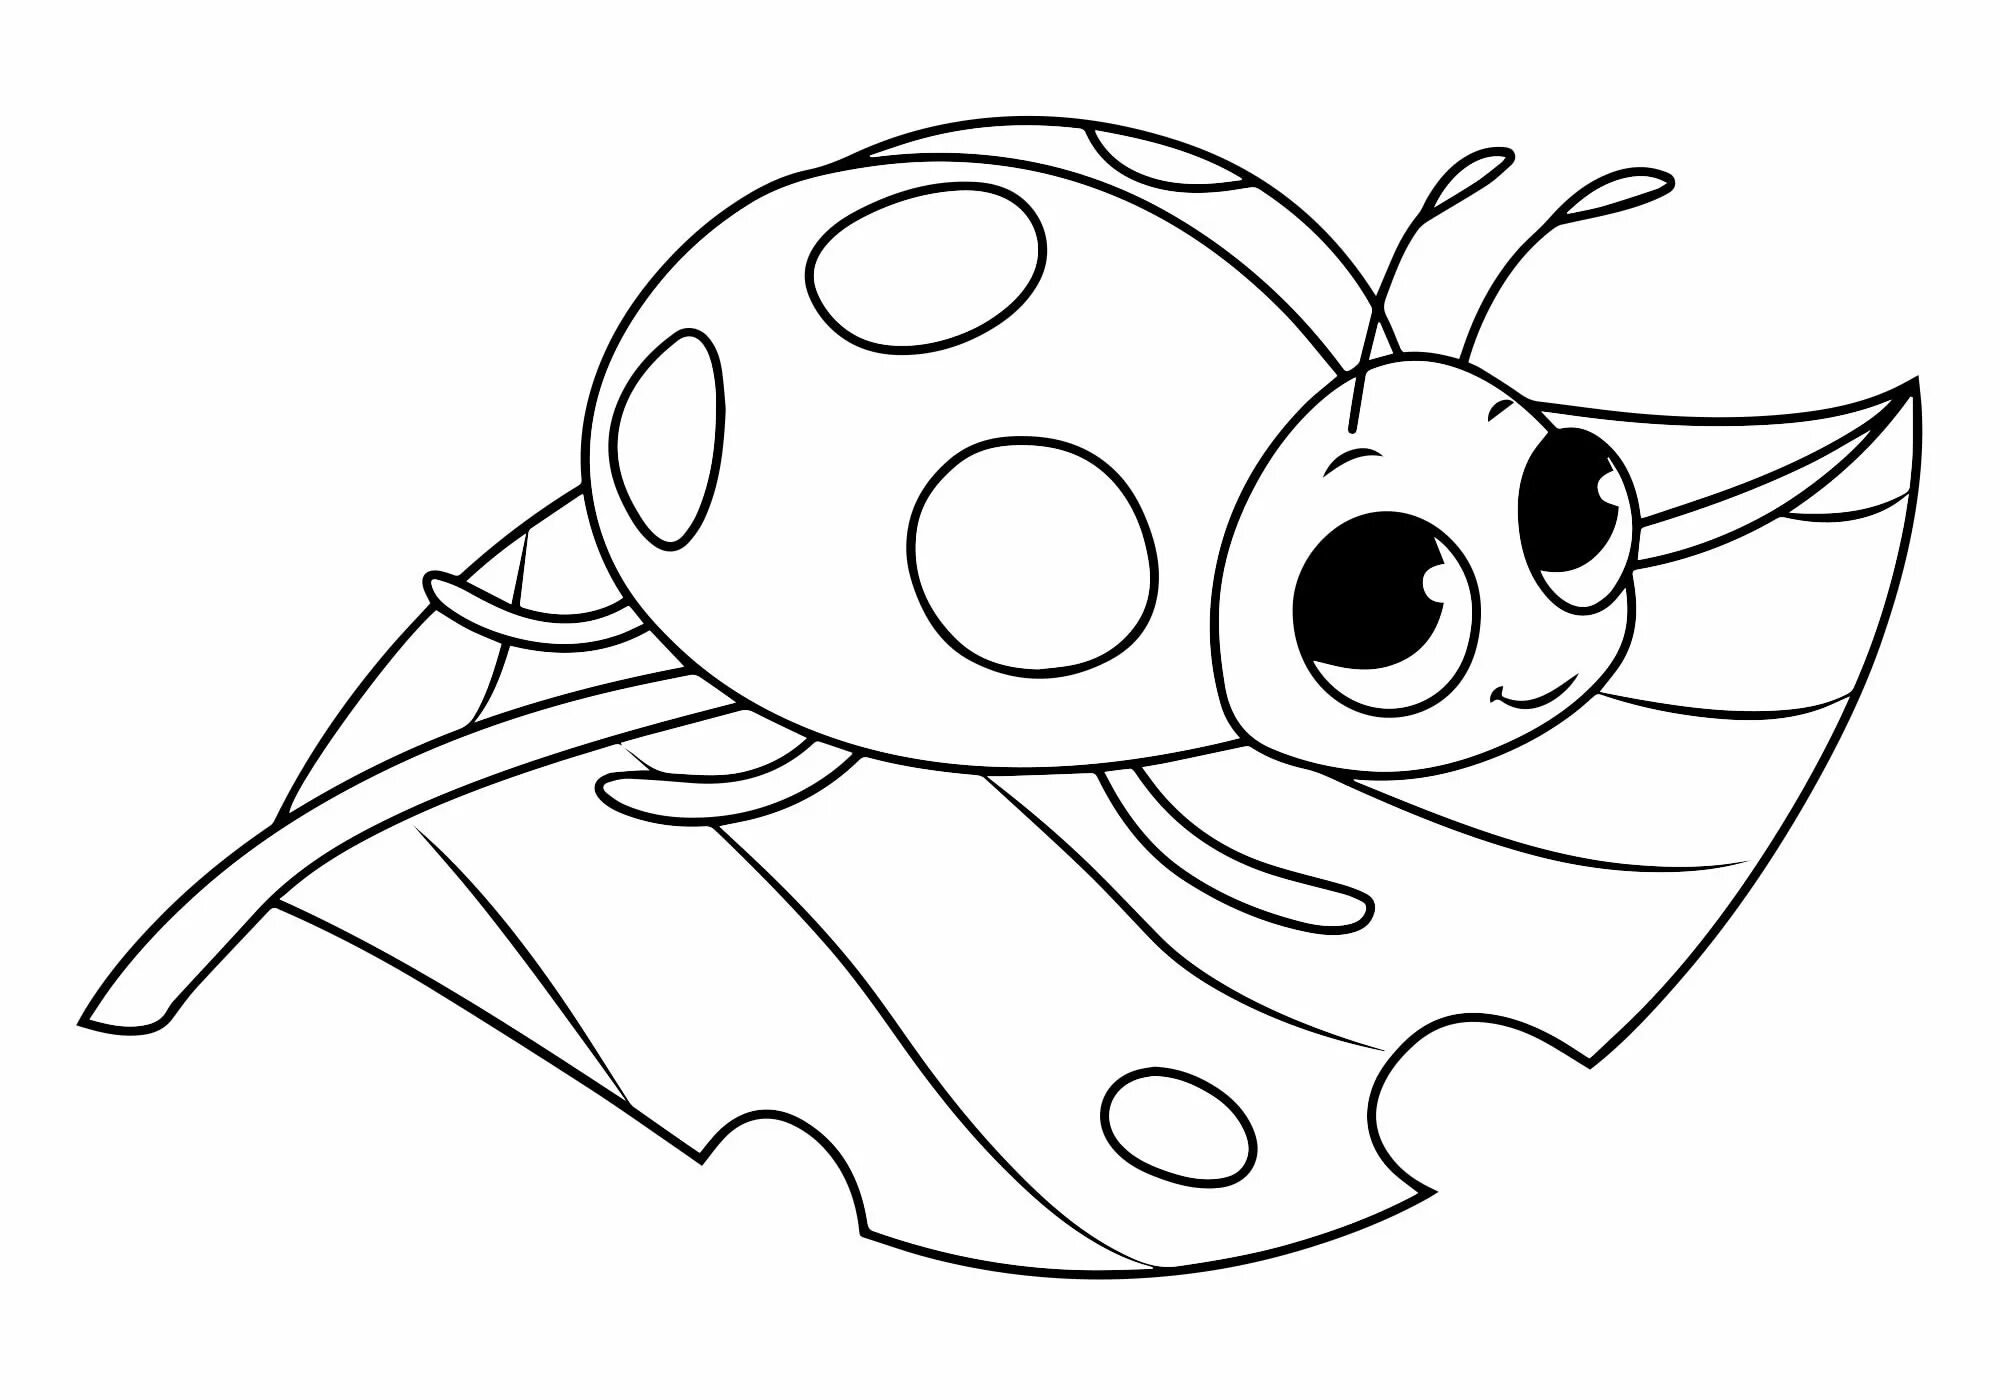 Baby ladybug #2